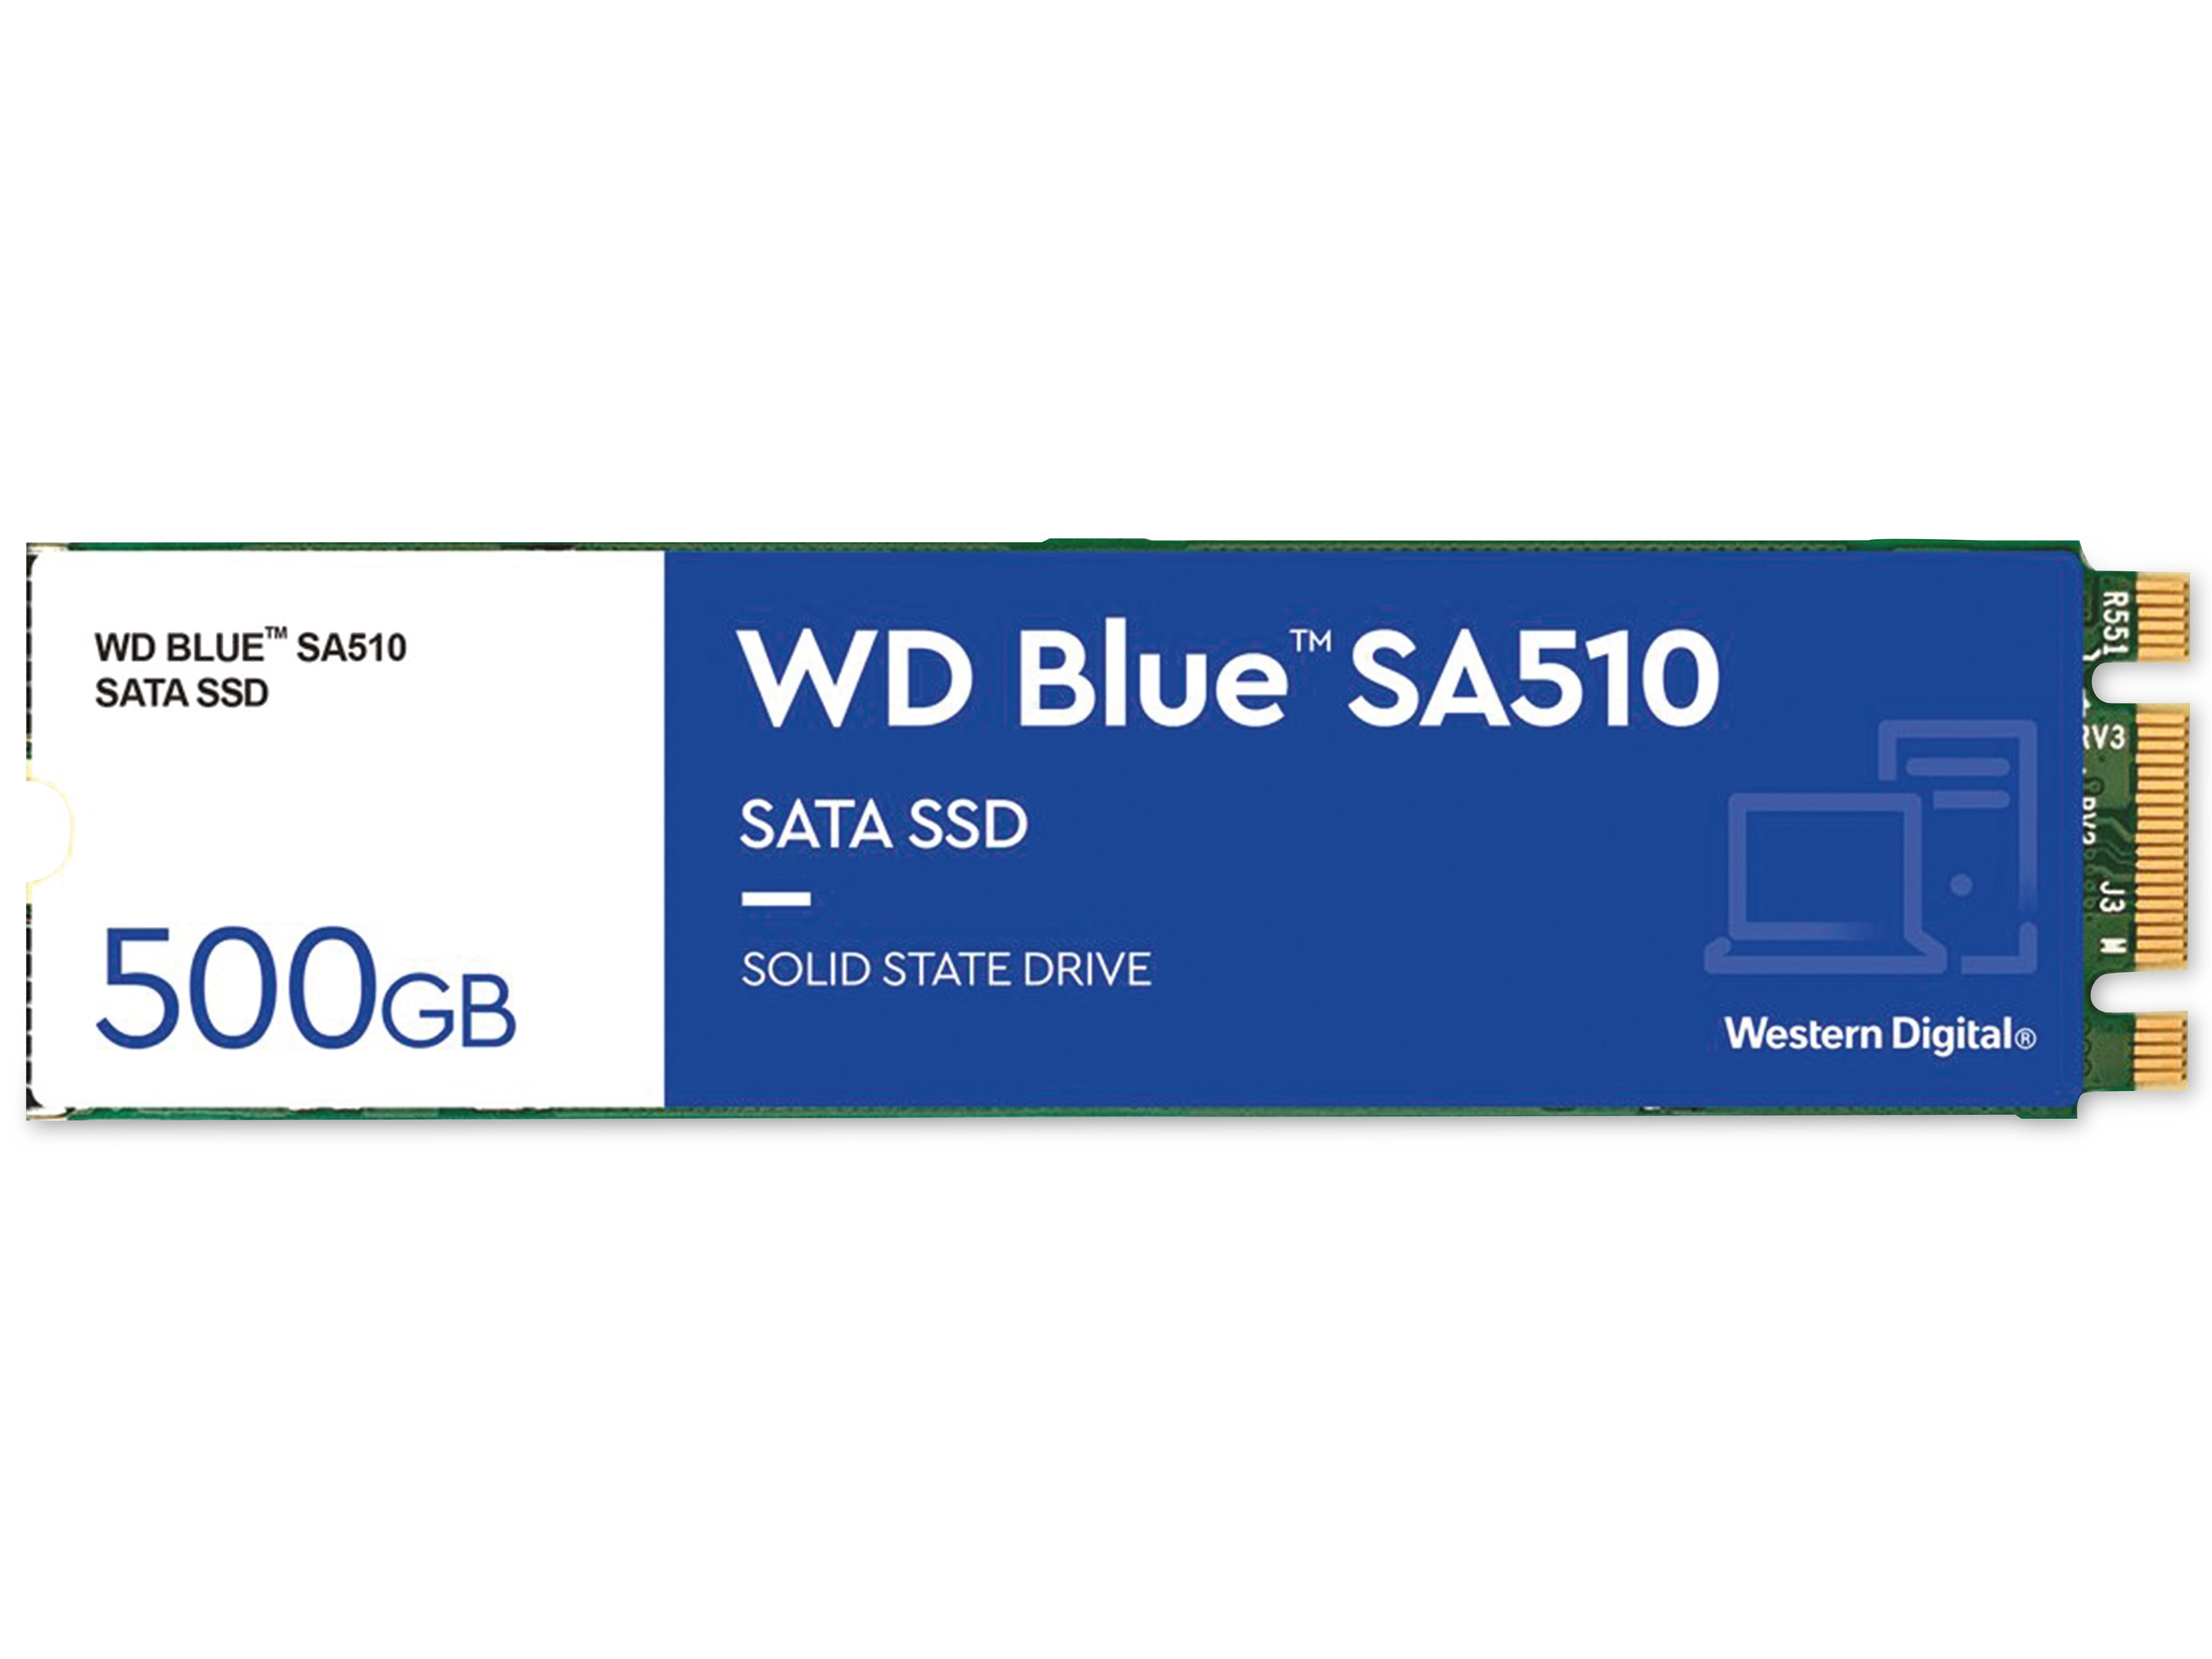 WESTERN DIGITAL M.2 SSD WD Blue SA510, 500 GB, intern